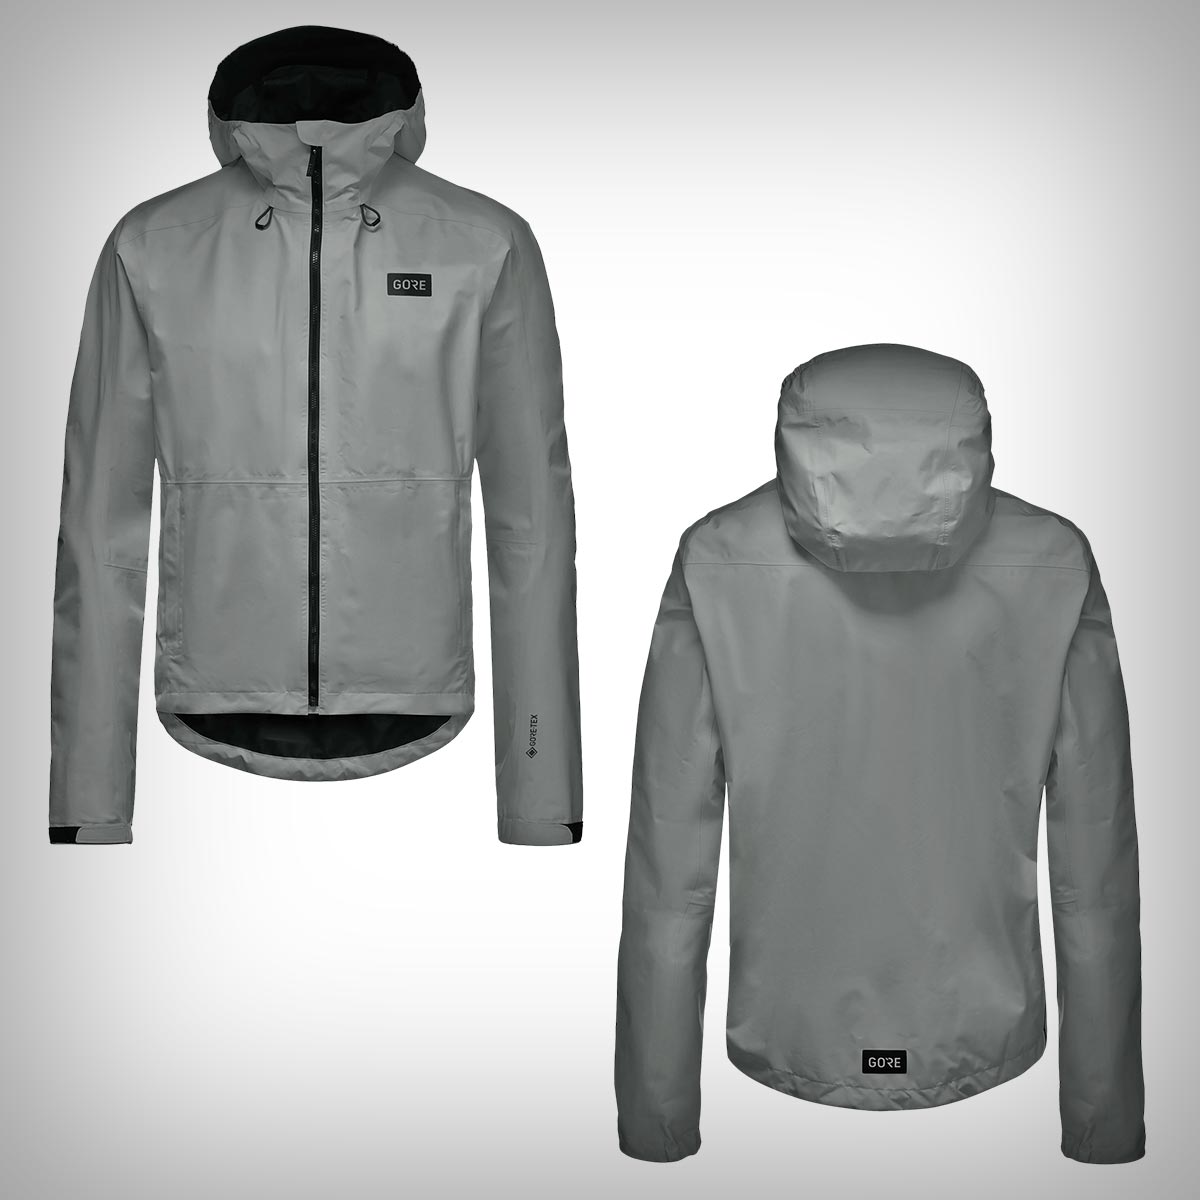 La chaqueta superventas Endure Gore-Tex de Gorewear estrena dos nuevos colores